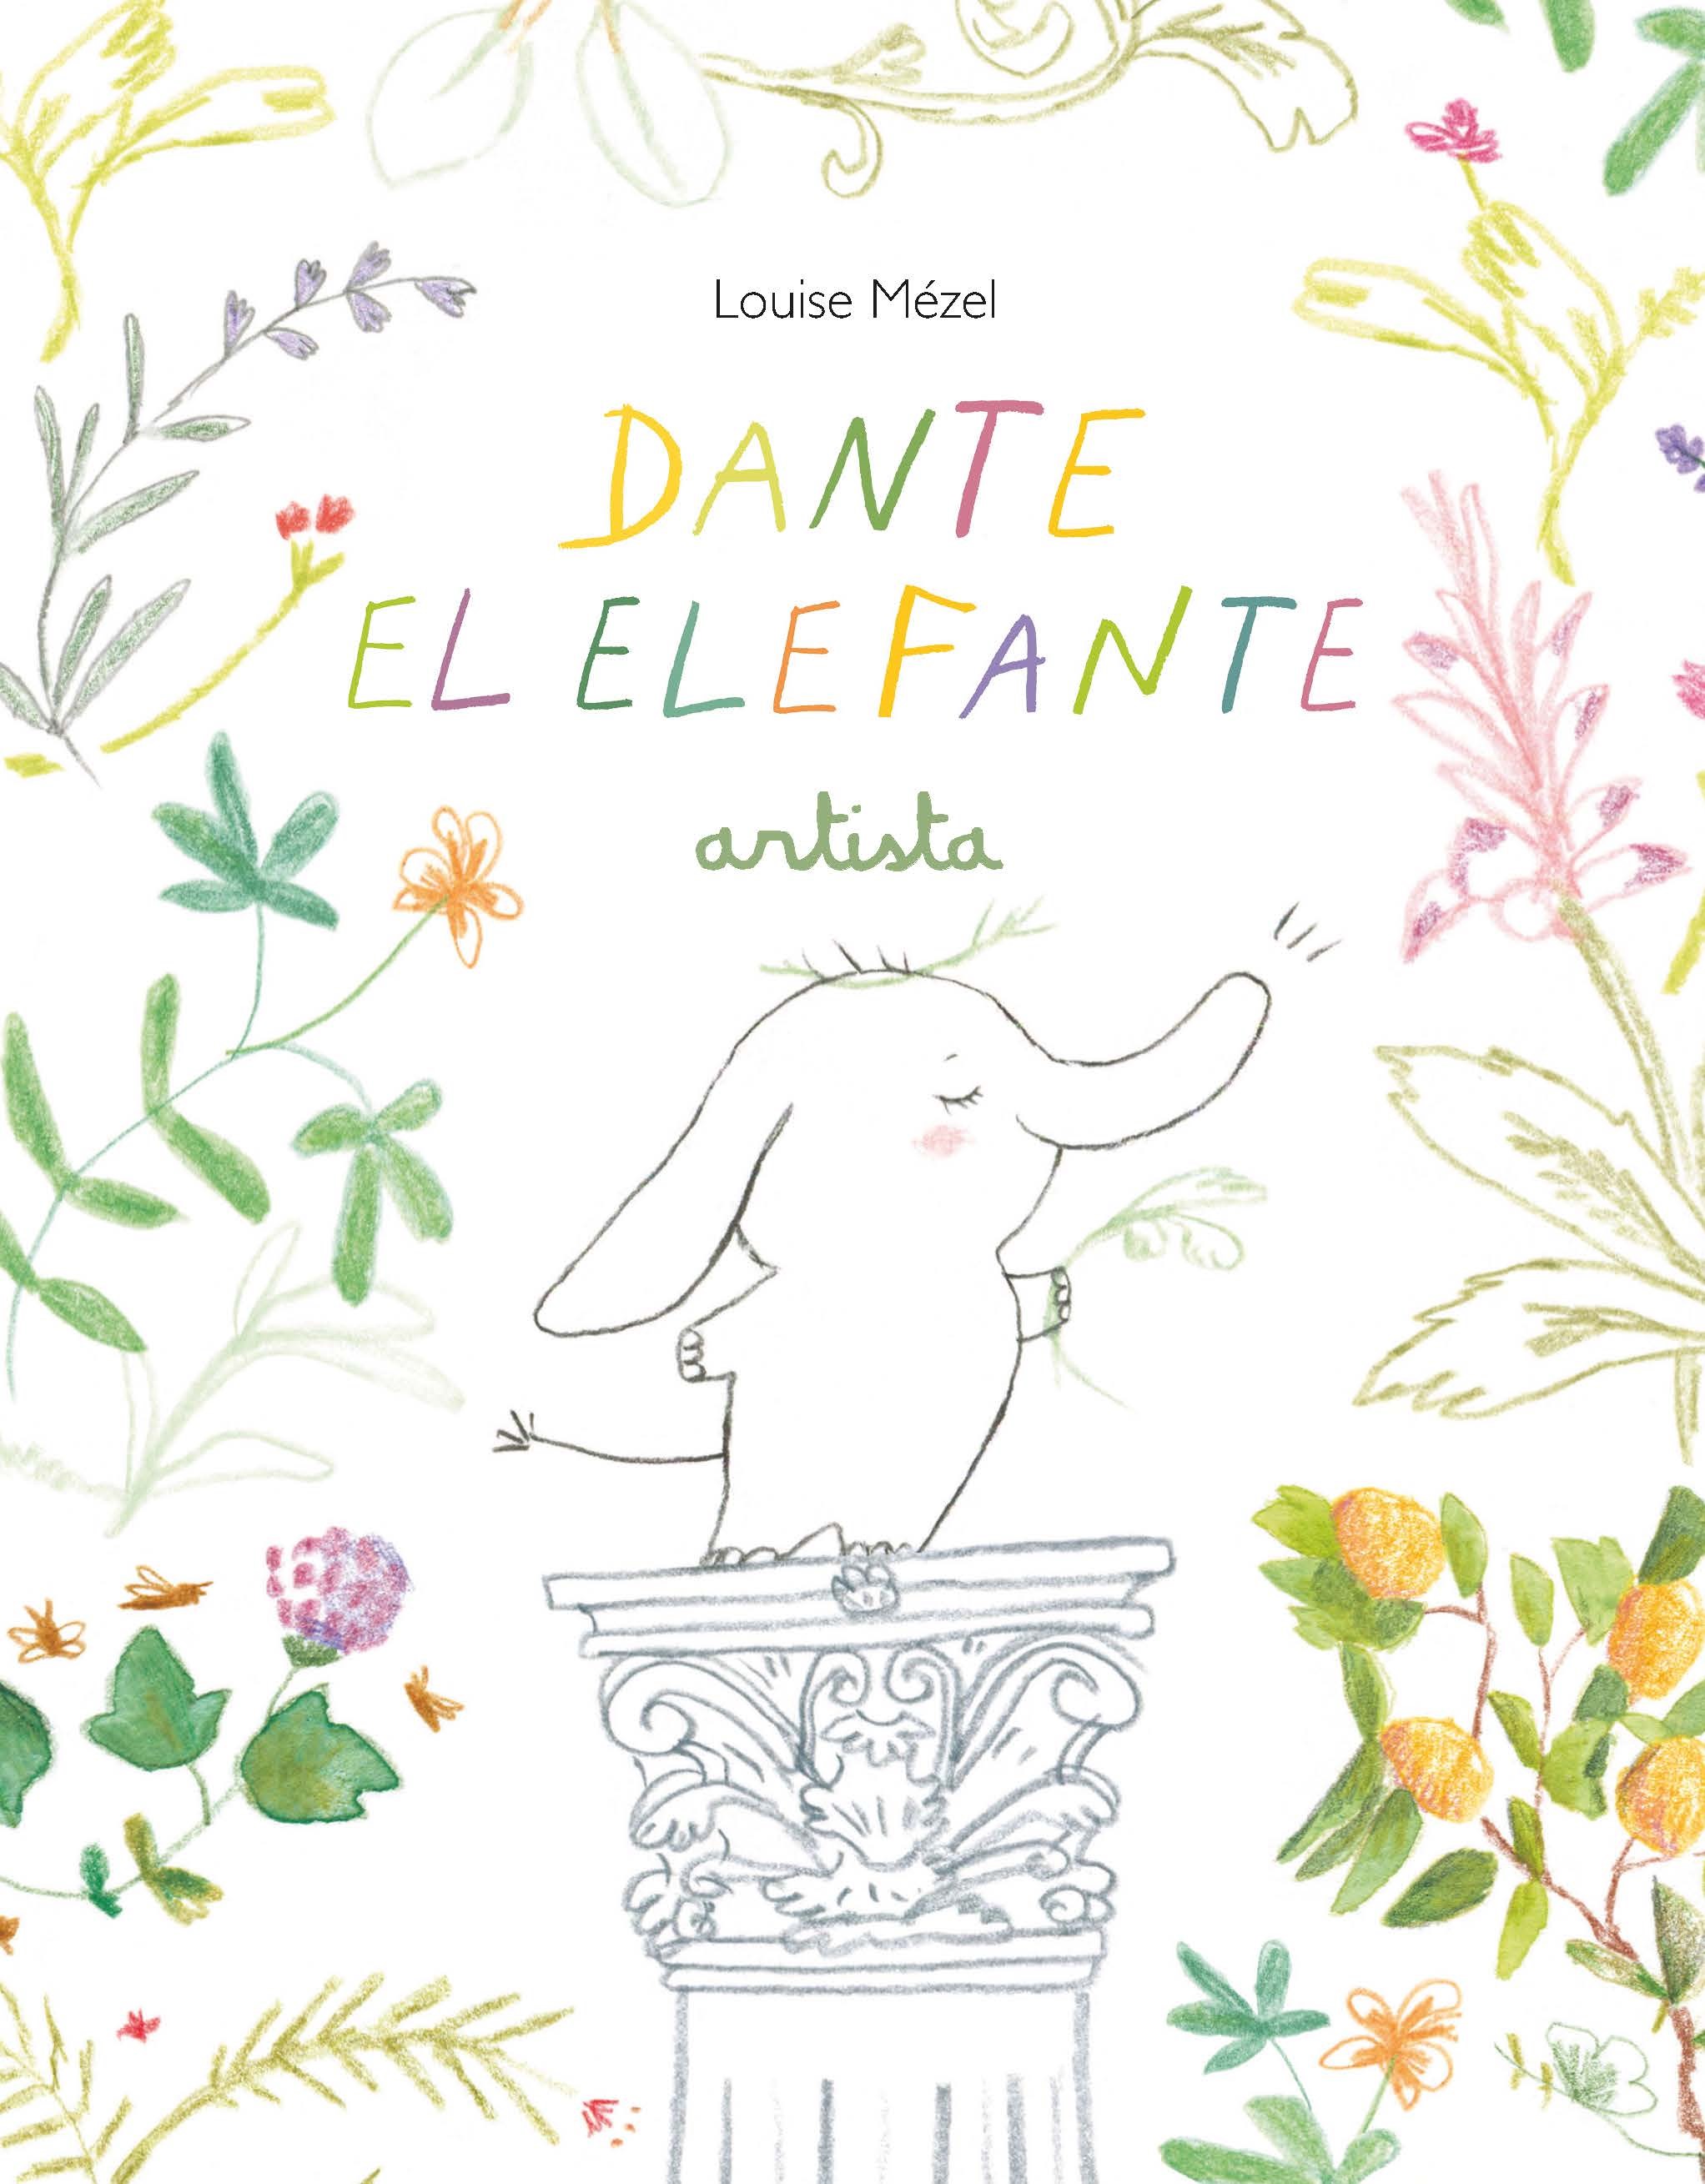 Dante el elefante, artista.